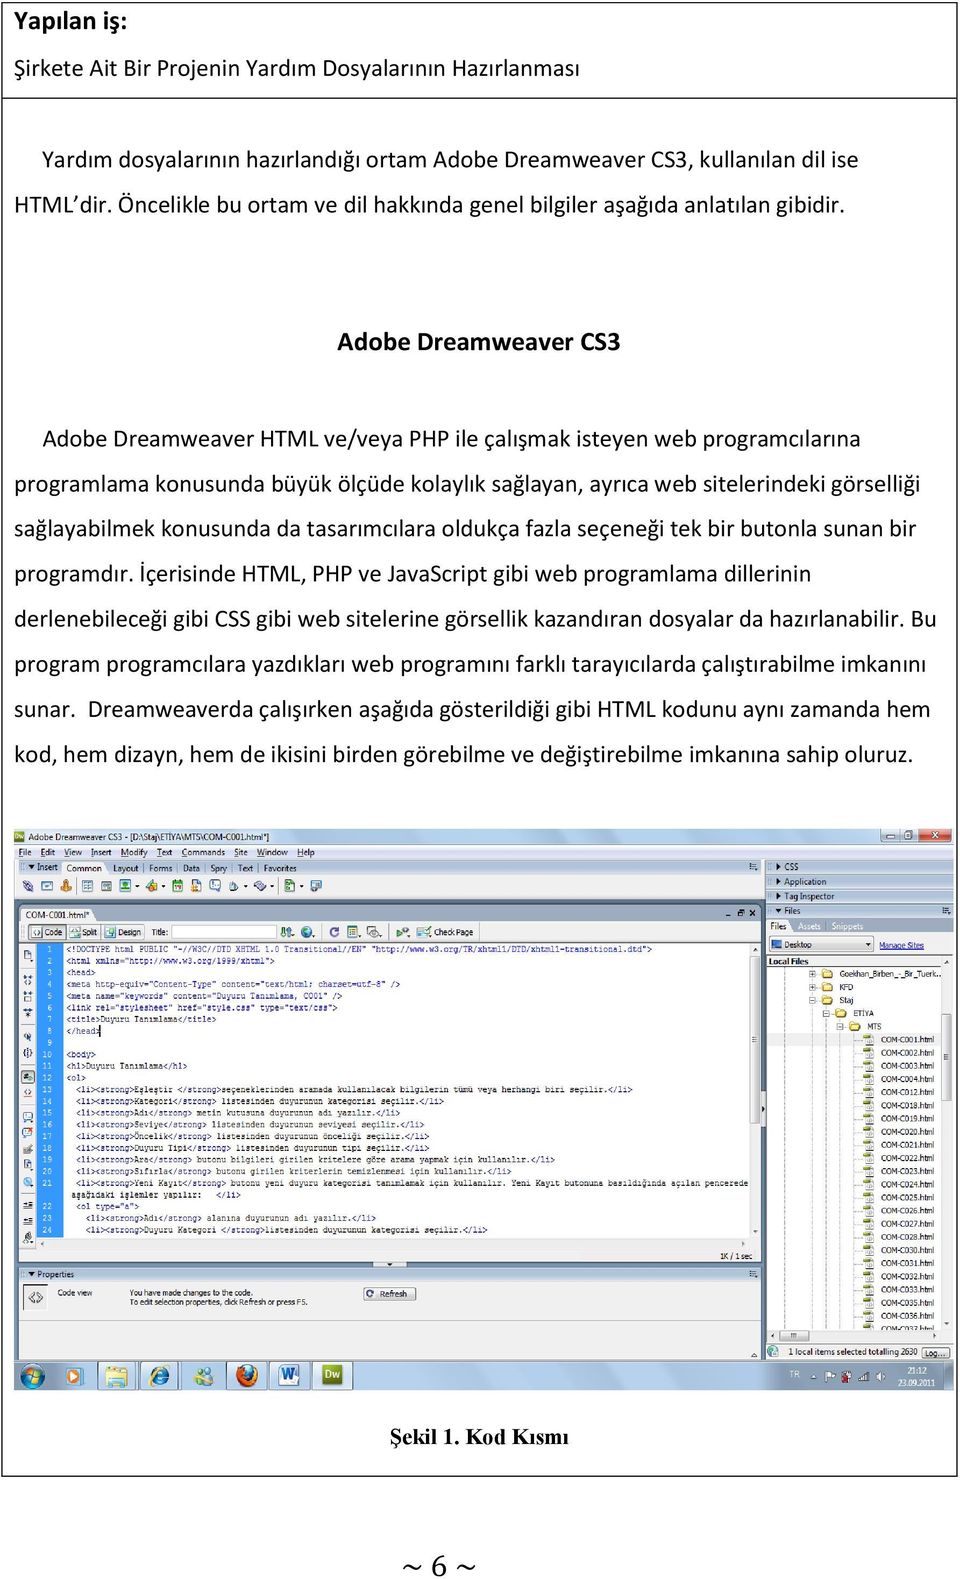 Adobe Dreamweaver CS3 Adobe Dreamweaver HTML ve/veya PHP ile çalışmak isteyen web programcılarına programlama konusunda büyük ölçüde kolaylık sağlayan, ayrıca web sitelerindeki görselliği